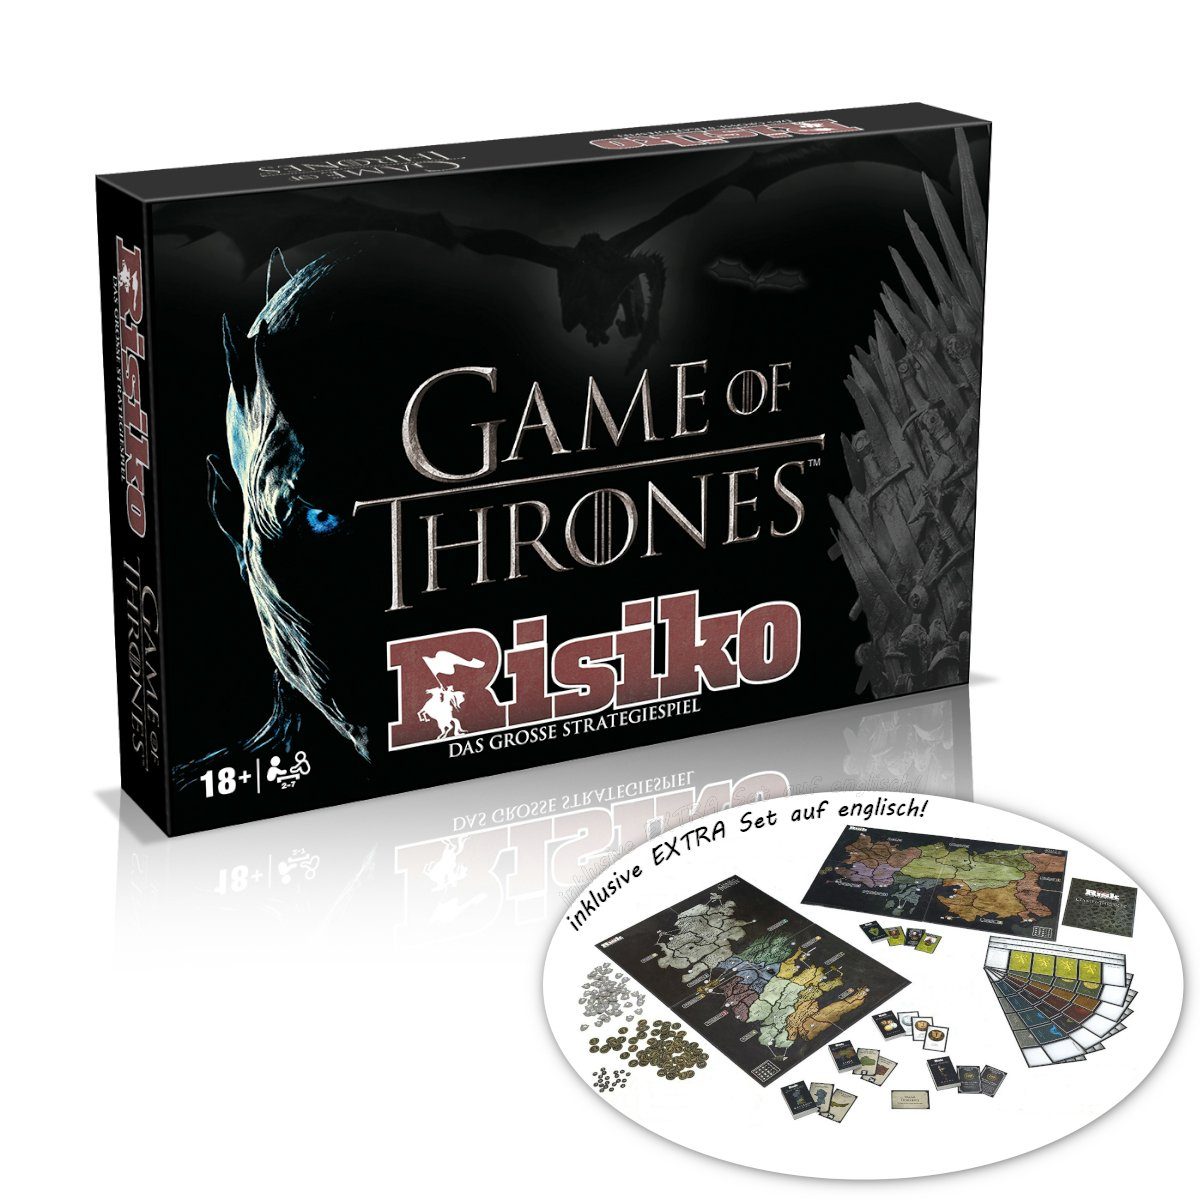 Thrones Risiko (Collectors englisch Spiel, Brettspiel auf of EXTRA Edition) - Winning Set deutsch, inkl. Moves Game